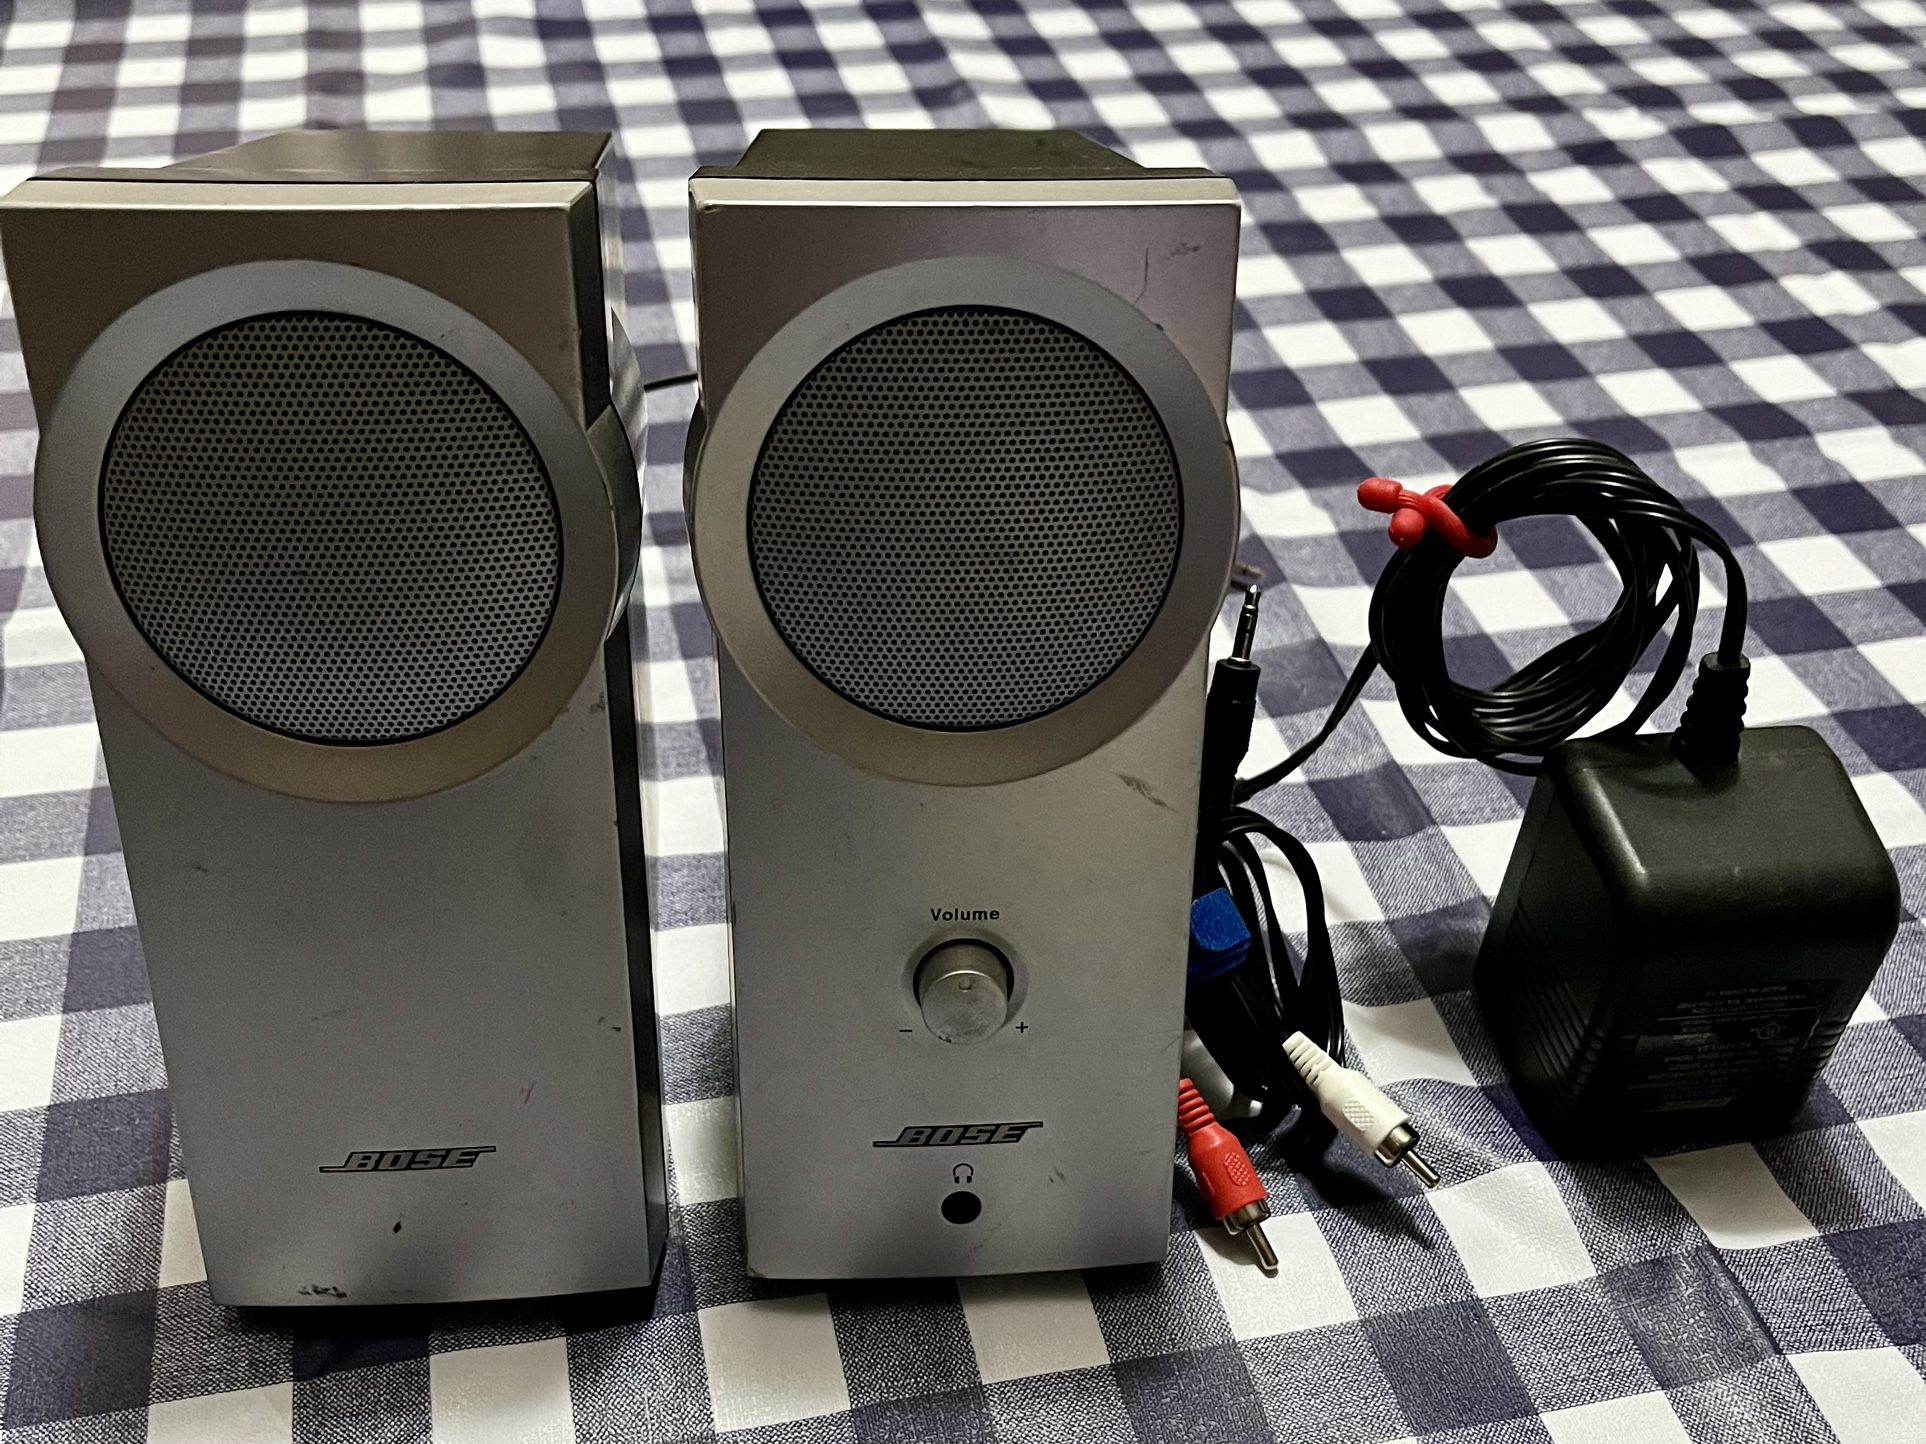 Bose Desktop Speakers